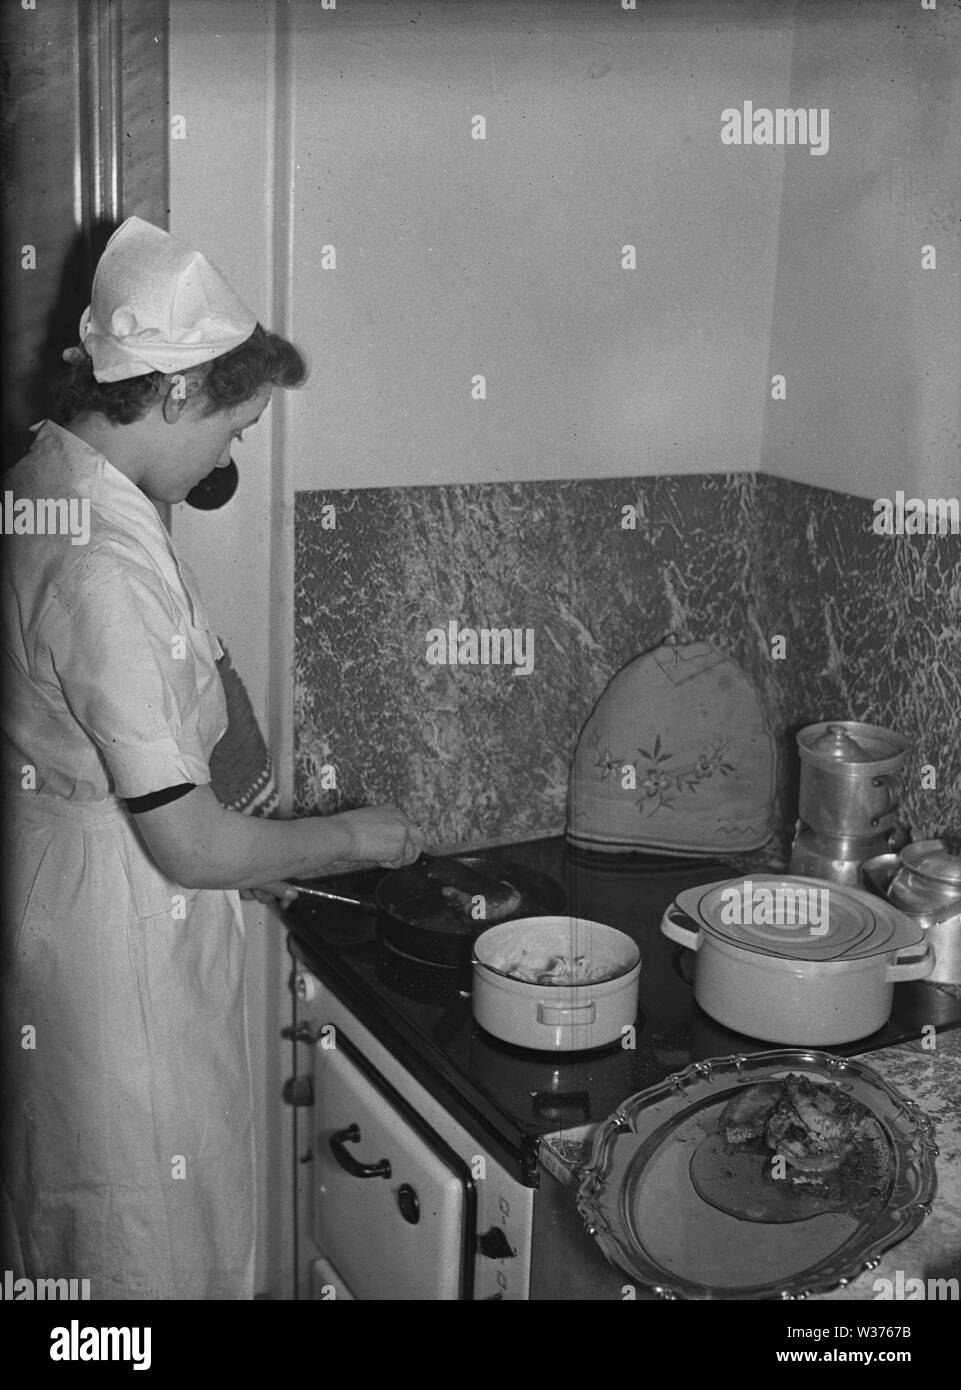 La cuisine dans les années 40. Une jeune femme employée comme femme de chambre de cuisson est un repas sur la cuisinière. Suède 1940. Kristoffersson ref 55-5 Banque D'Images